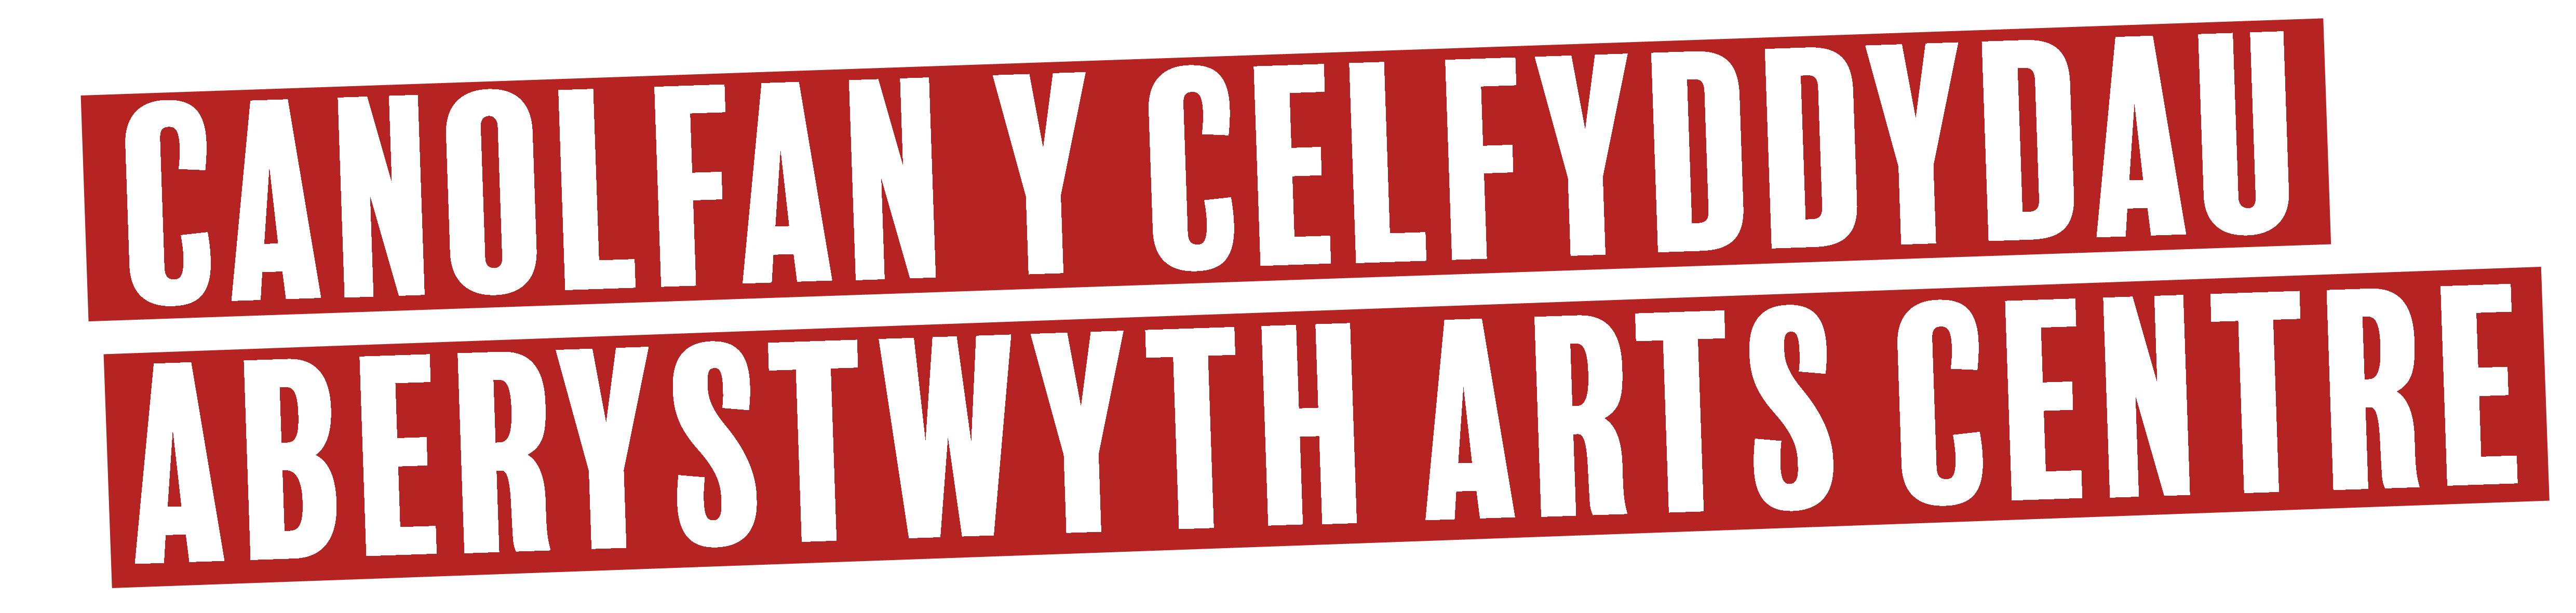 White text 'Canolfan y Celfyddydau Aberystwyth Arts Centre' written on a red block 